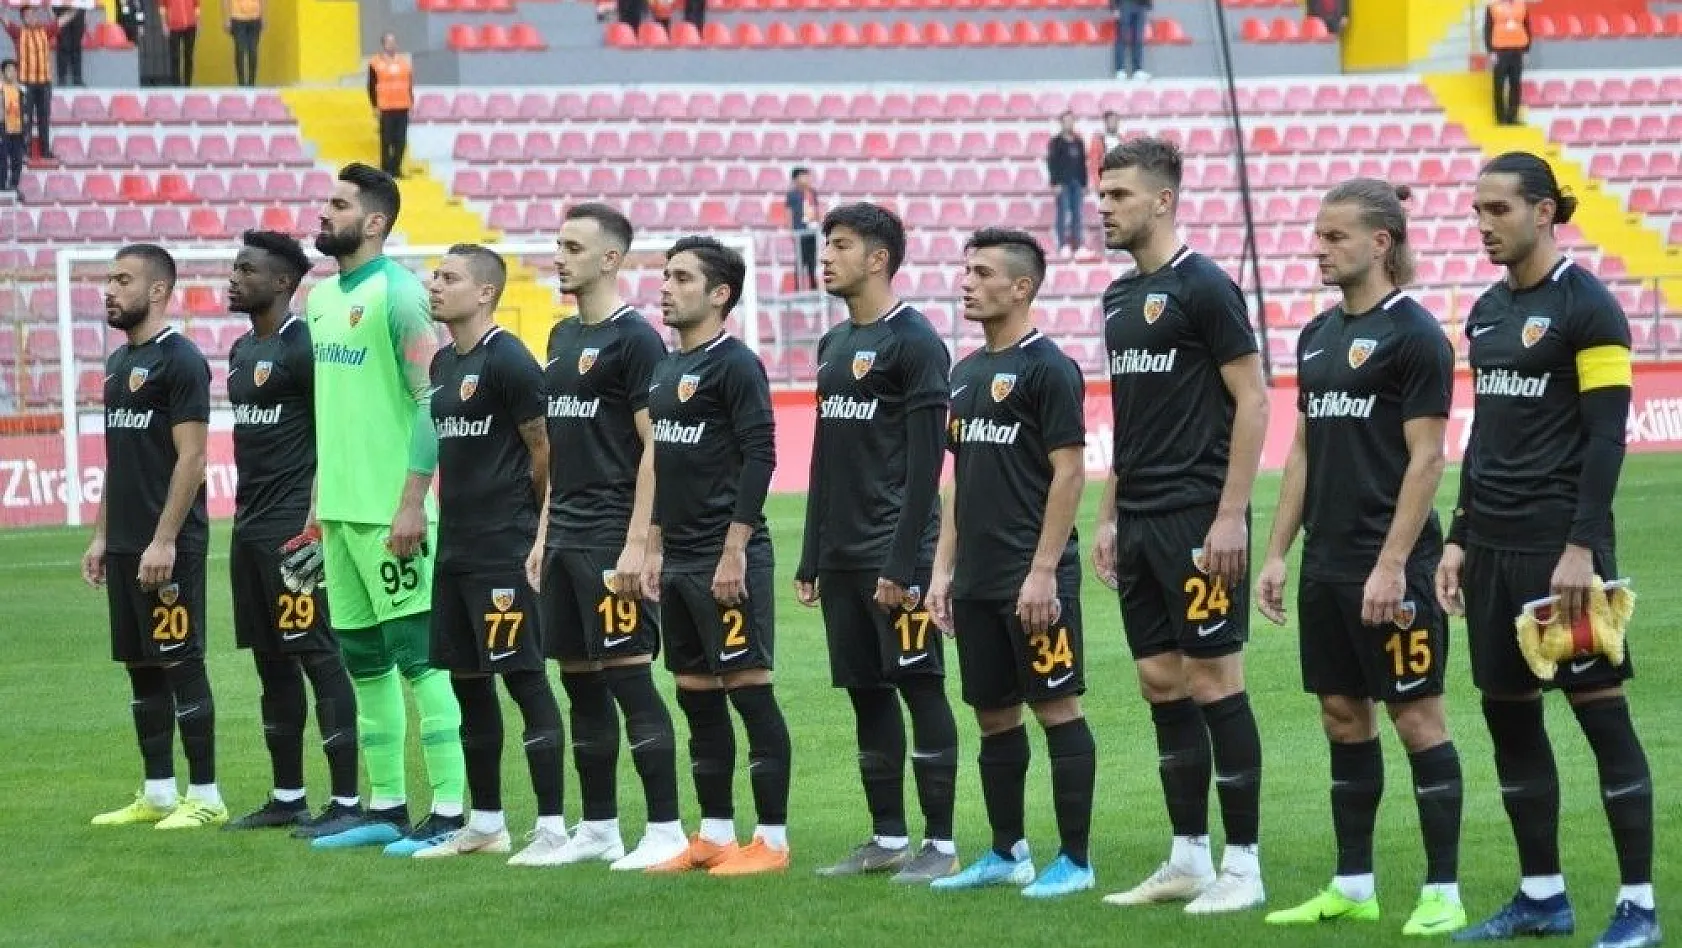 Ziraat Türkiye Kupası: Kayserispor: 0 - Bayrampaşa: 0 (İlk yarı)
